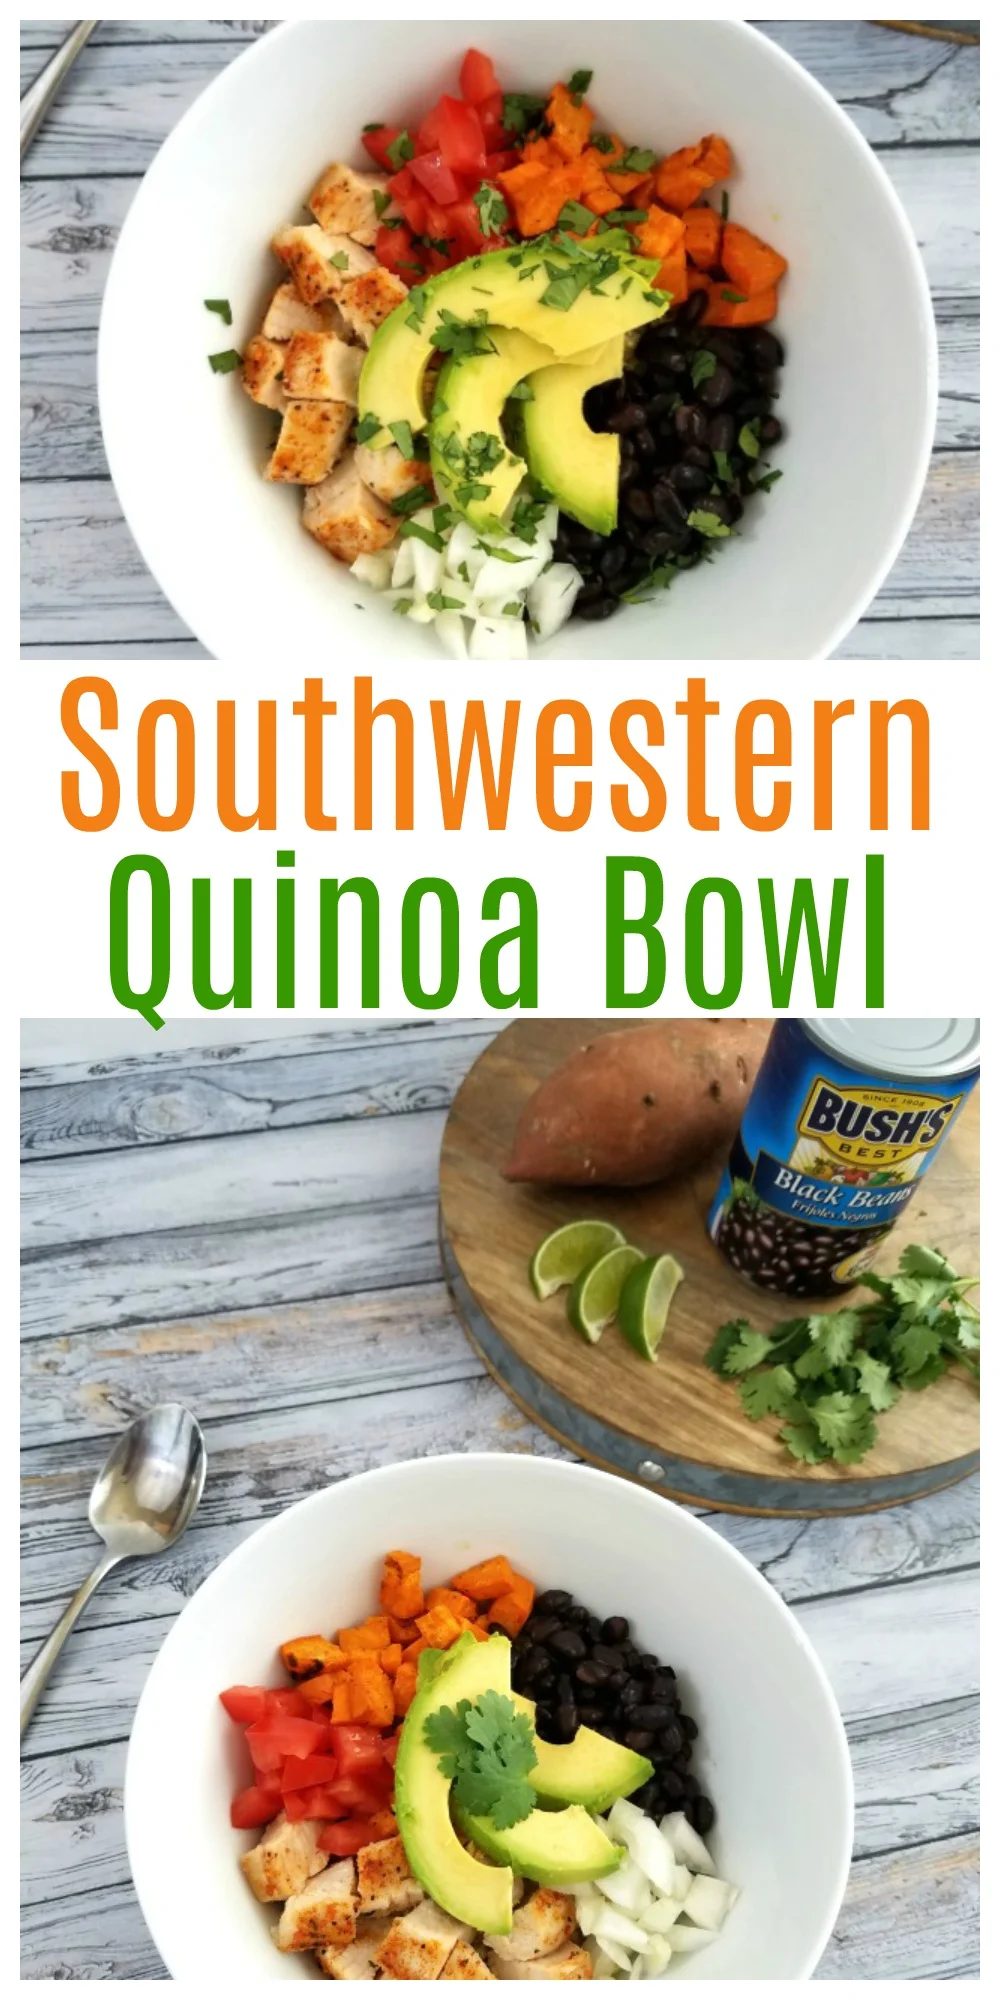 Southwestern Quinoa Bowl Recipe